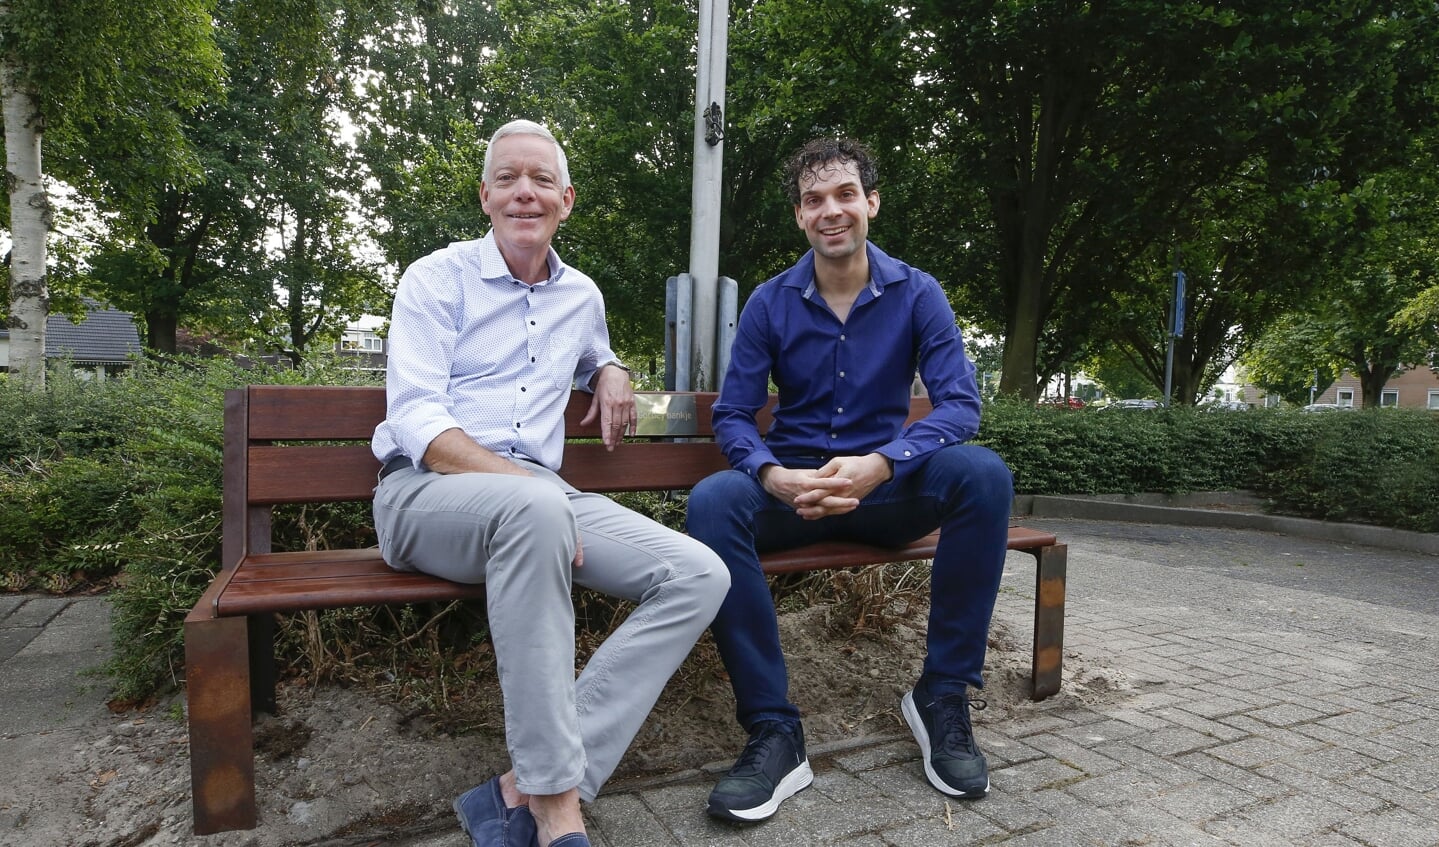 De beide artsen, links Hans Corbey met Dirk Sluiter op het bankje.  (Foto: Jurgen van Hoof)